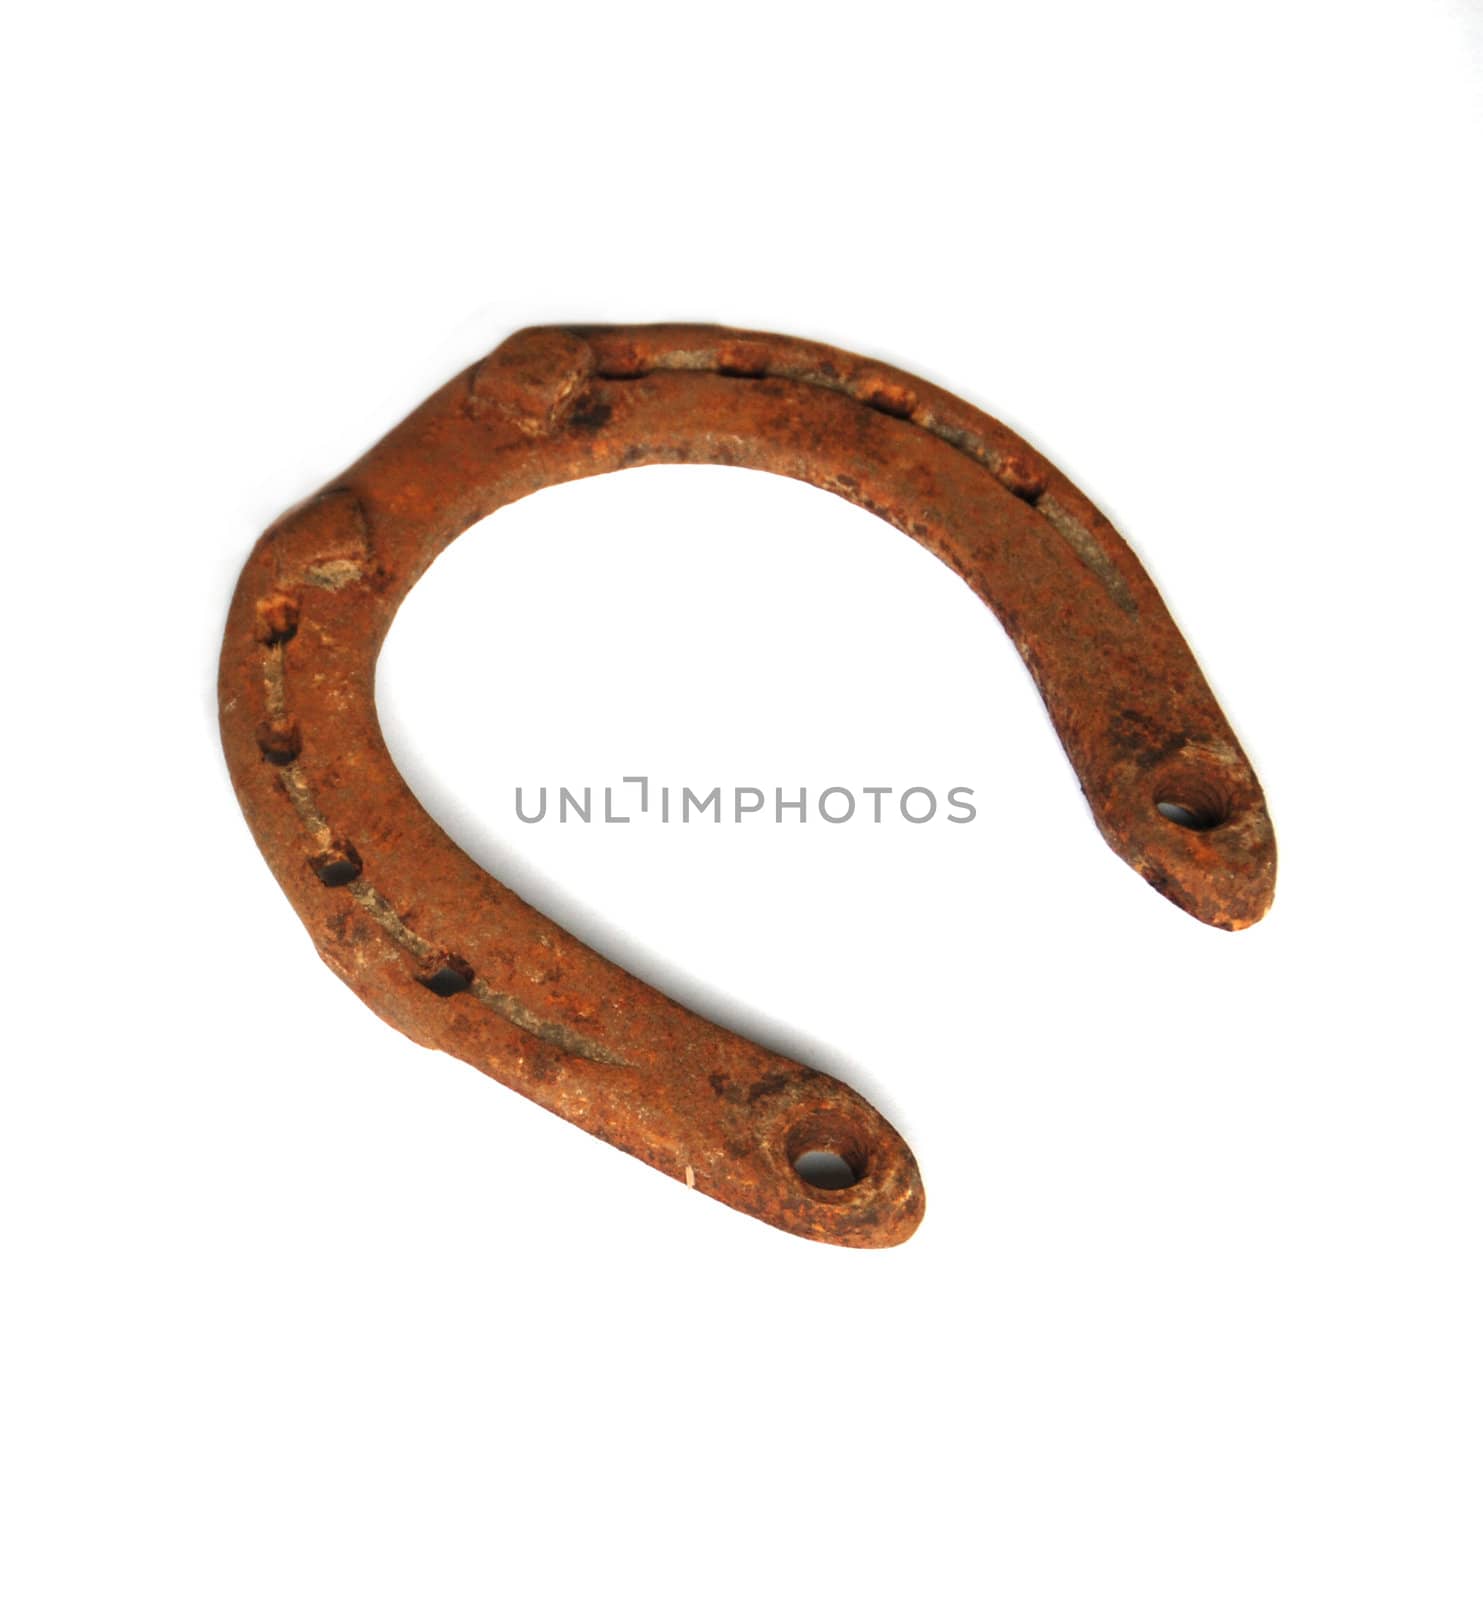 Old rusty horseshoe isolated on the white background